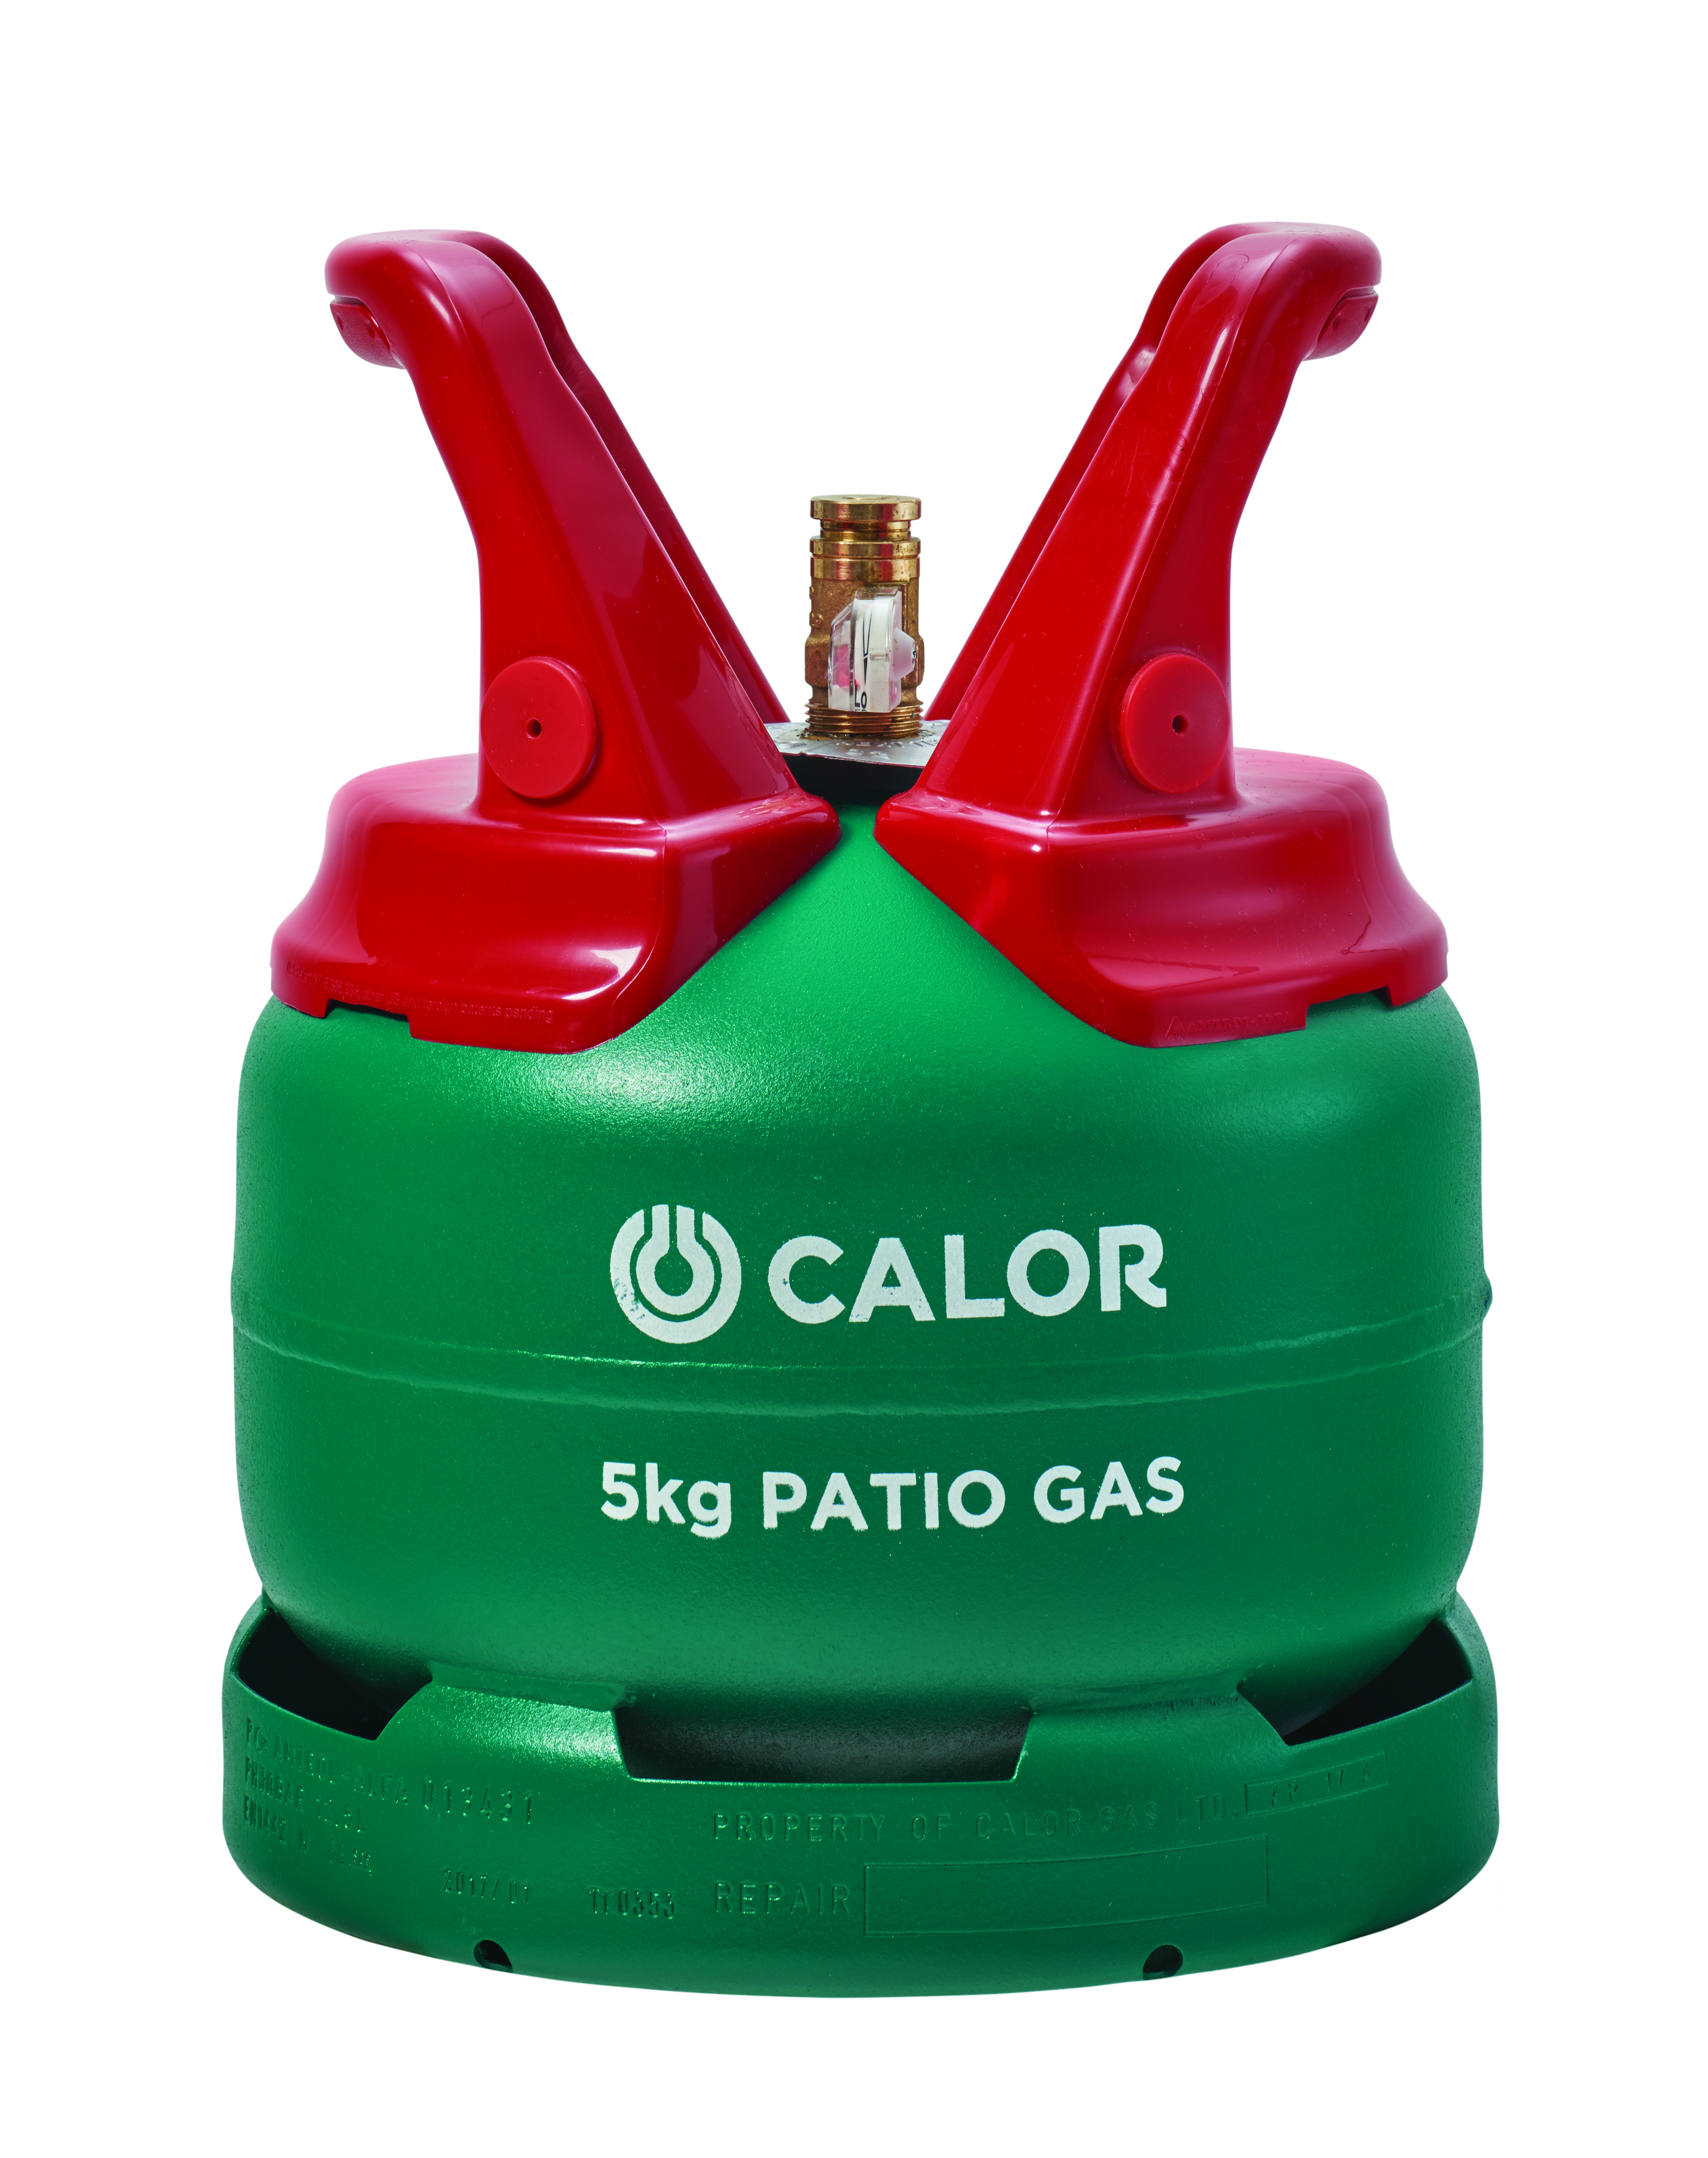 5kg Patio Gas Bottle